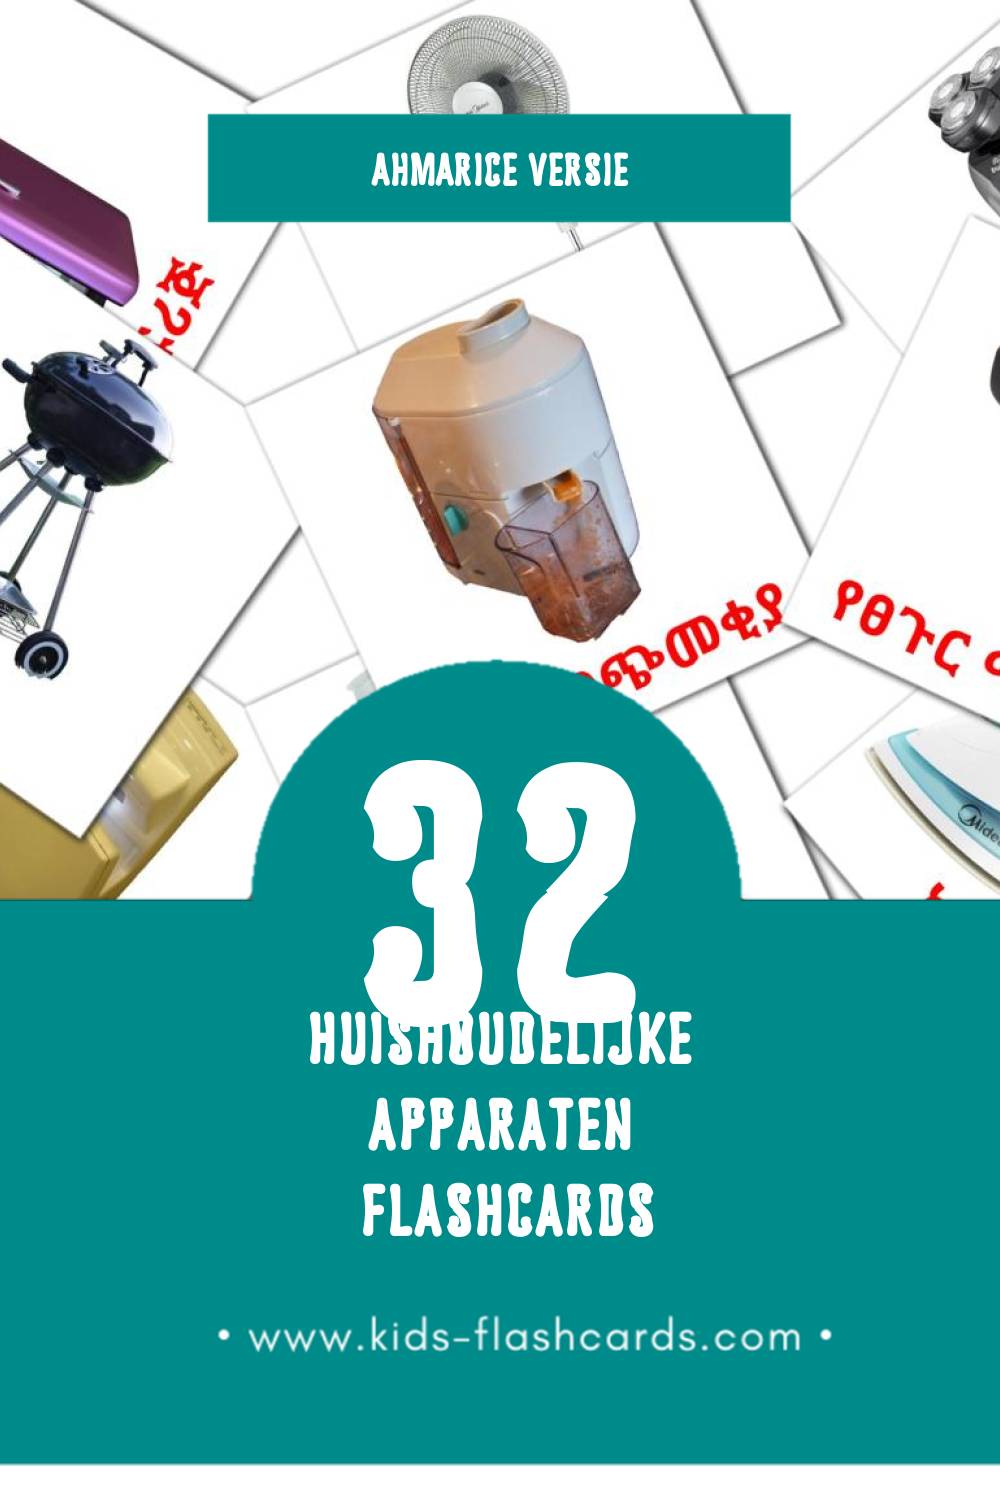 Visuele የቤት እቃዎች Flashcards voor Kleuters (32 kaarten in het Ahmaric)